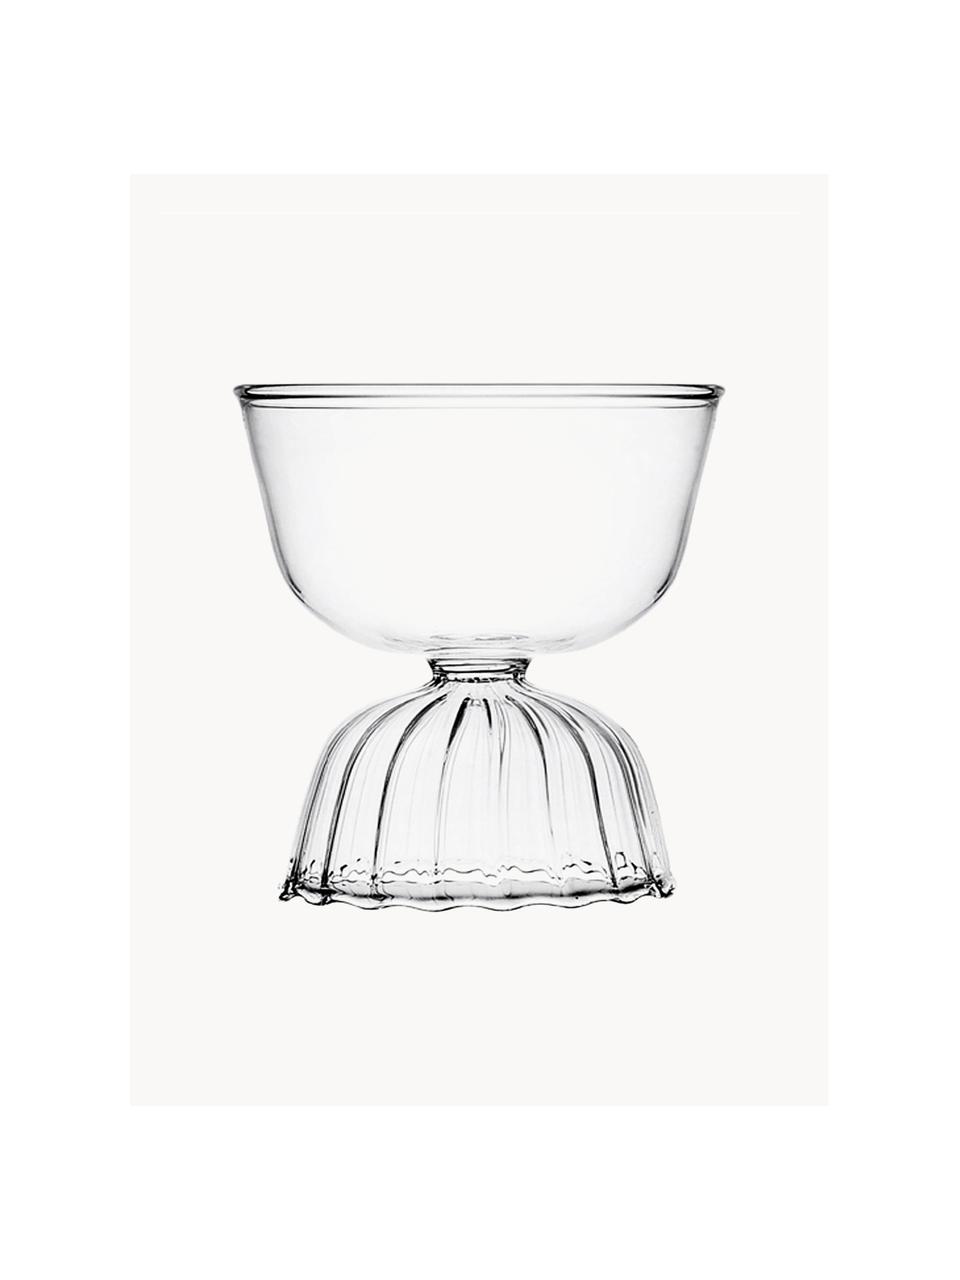 Handgefertigte Cocktailgläser Tutu, 2 Stück, Borosilikatglas, Transparent, Ø 10 x H 11 cm, 280 ml